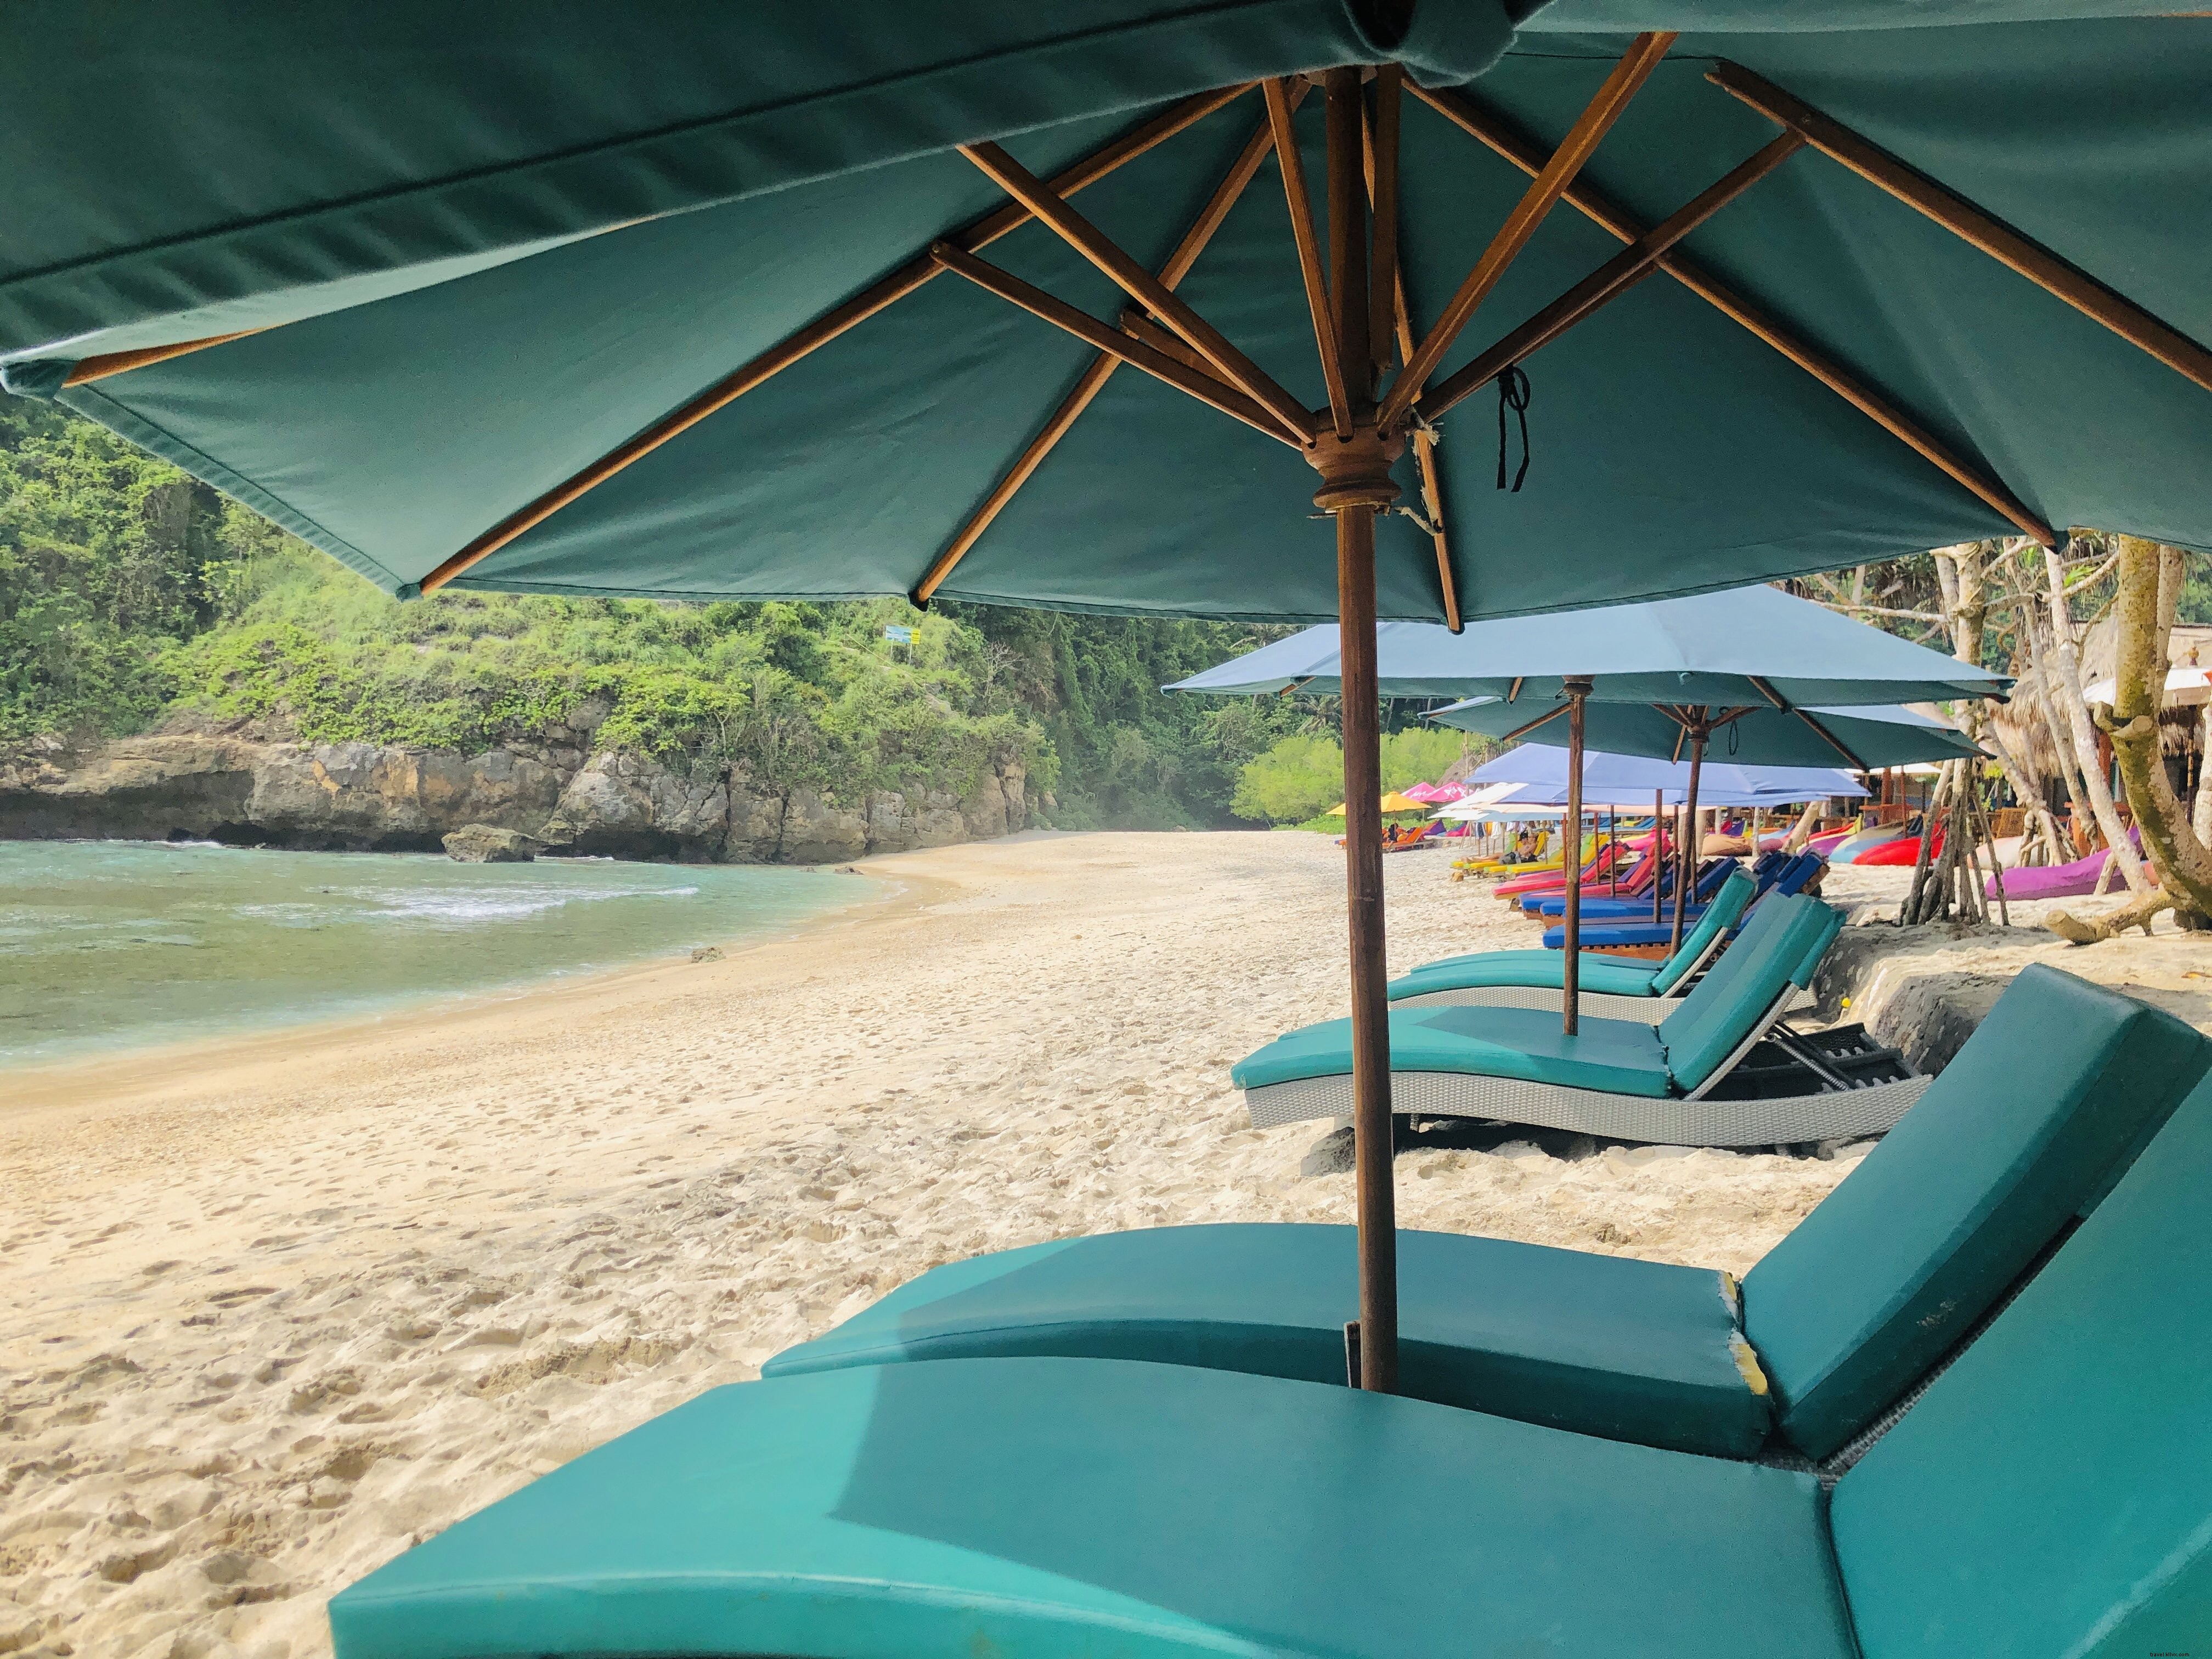 Blue Sun Shades Dan Deck Chairs Di Foto Pantai Berpasir Emas